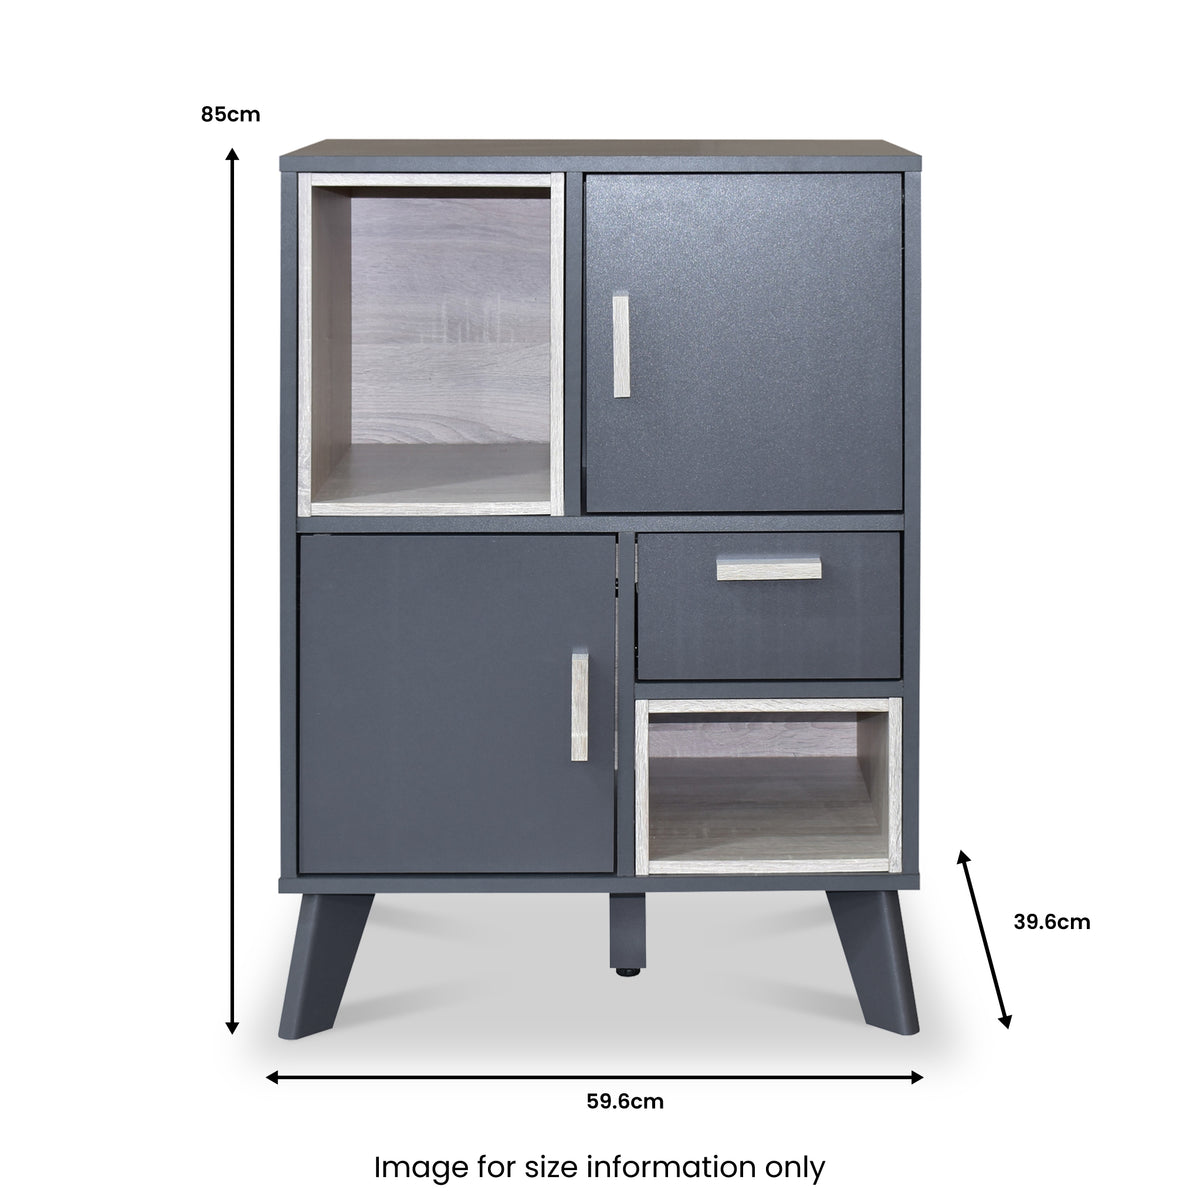 Kelso Grey & Oak Cabinet dimensions